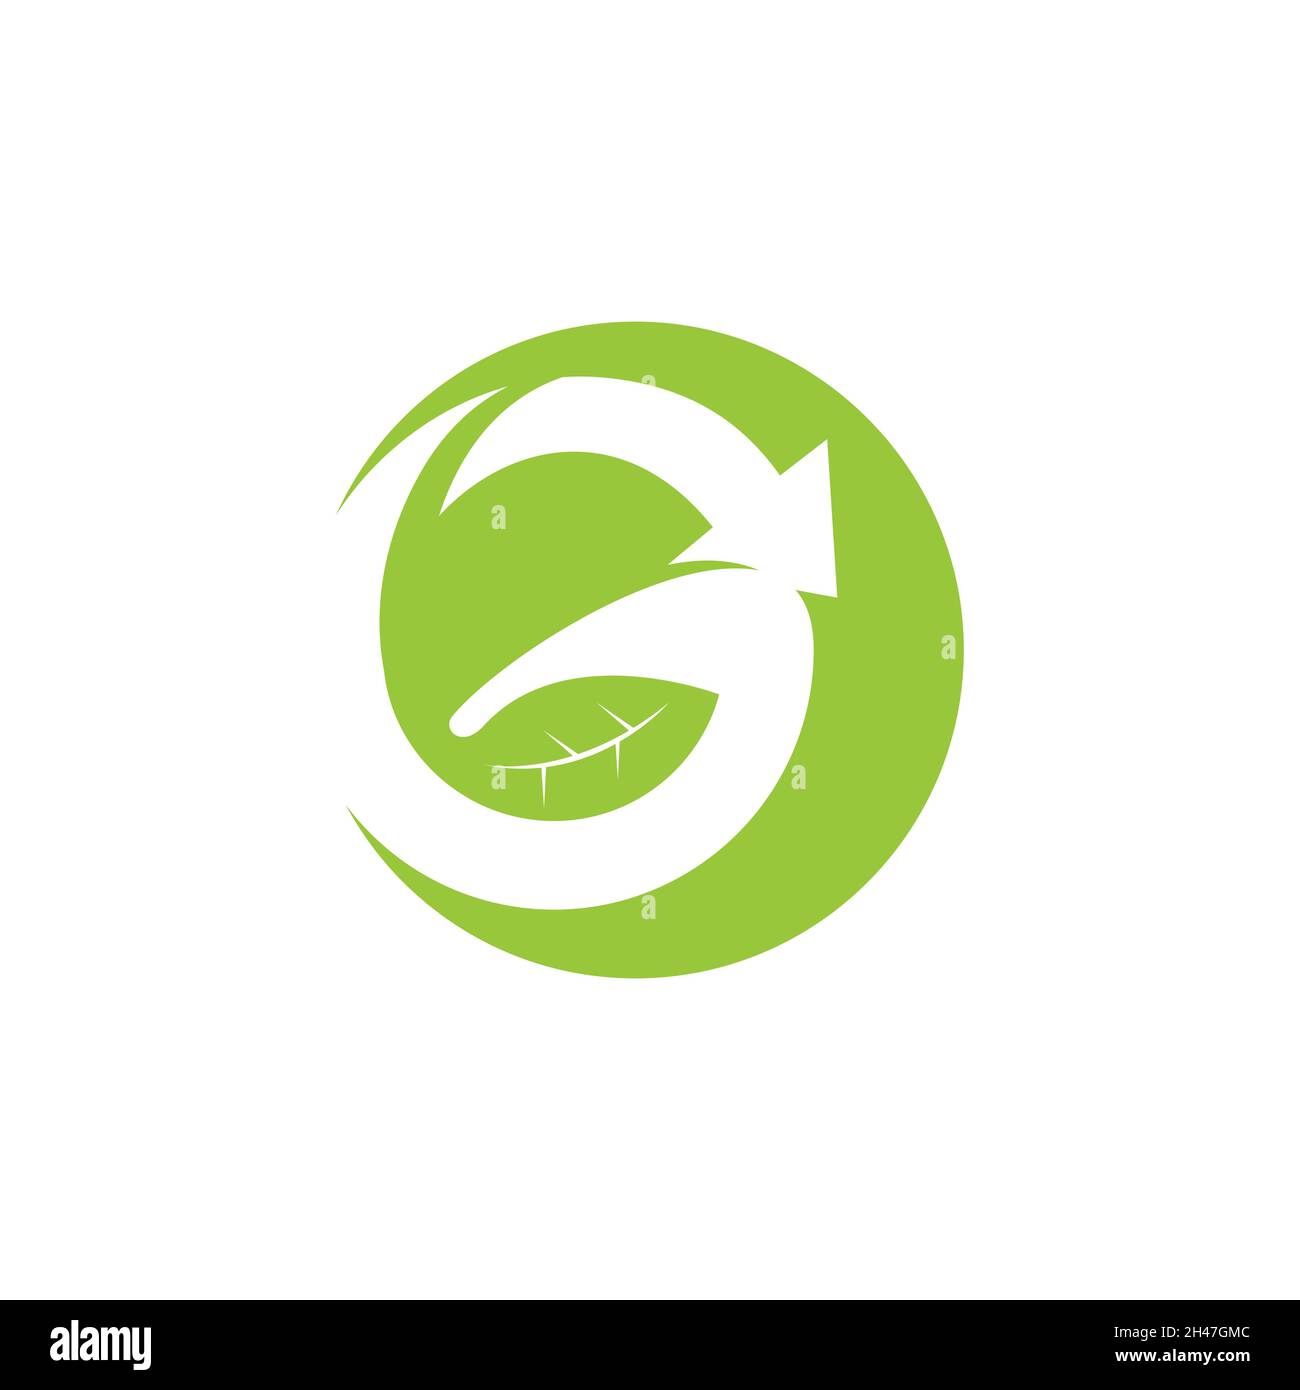 Lettre G logo feuille Natural Logos.Lettre g feuille naturelle vert élément logo design image vectorielle Illustration de Vecteur